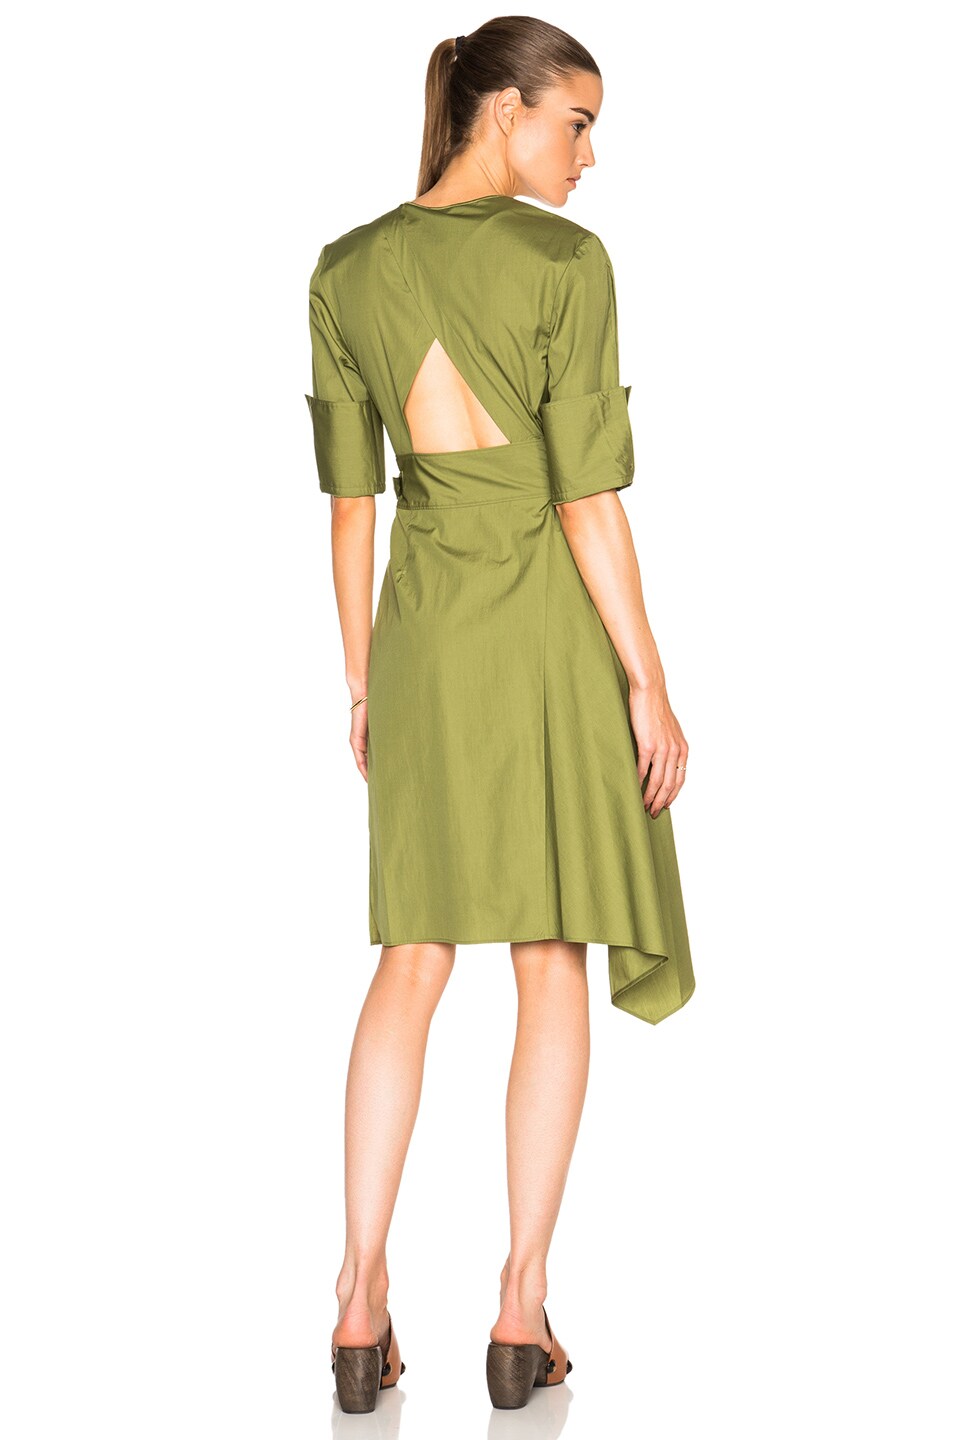 Image 1 of 3.1 phillip lim Short Sleeve Dress in Leaf